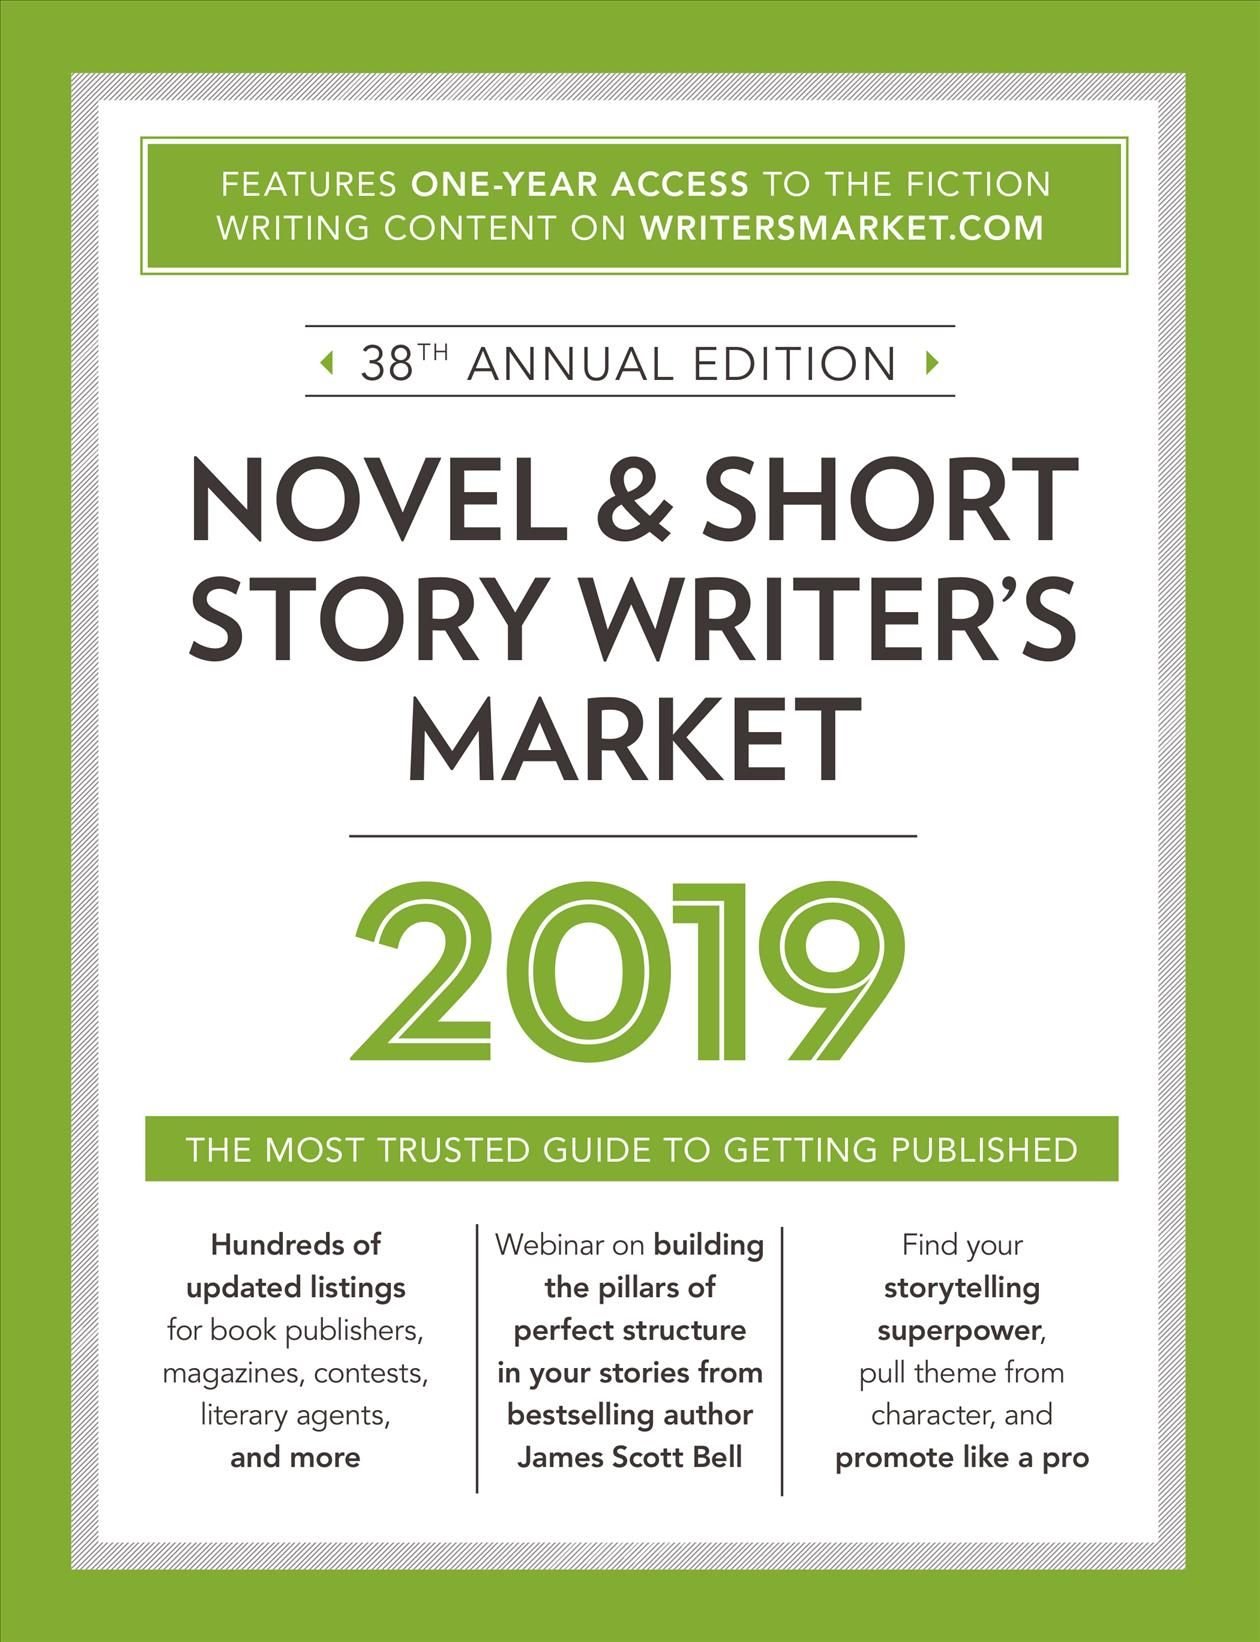 Novel & Short Story Writer's Market 2019